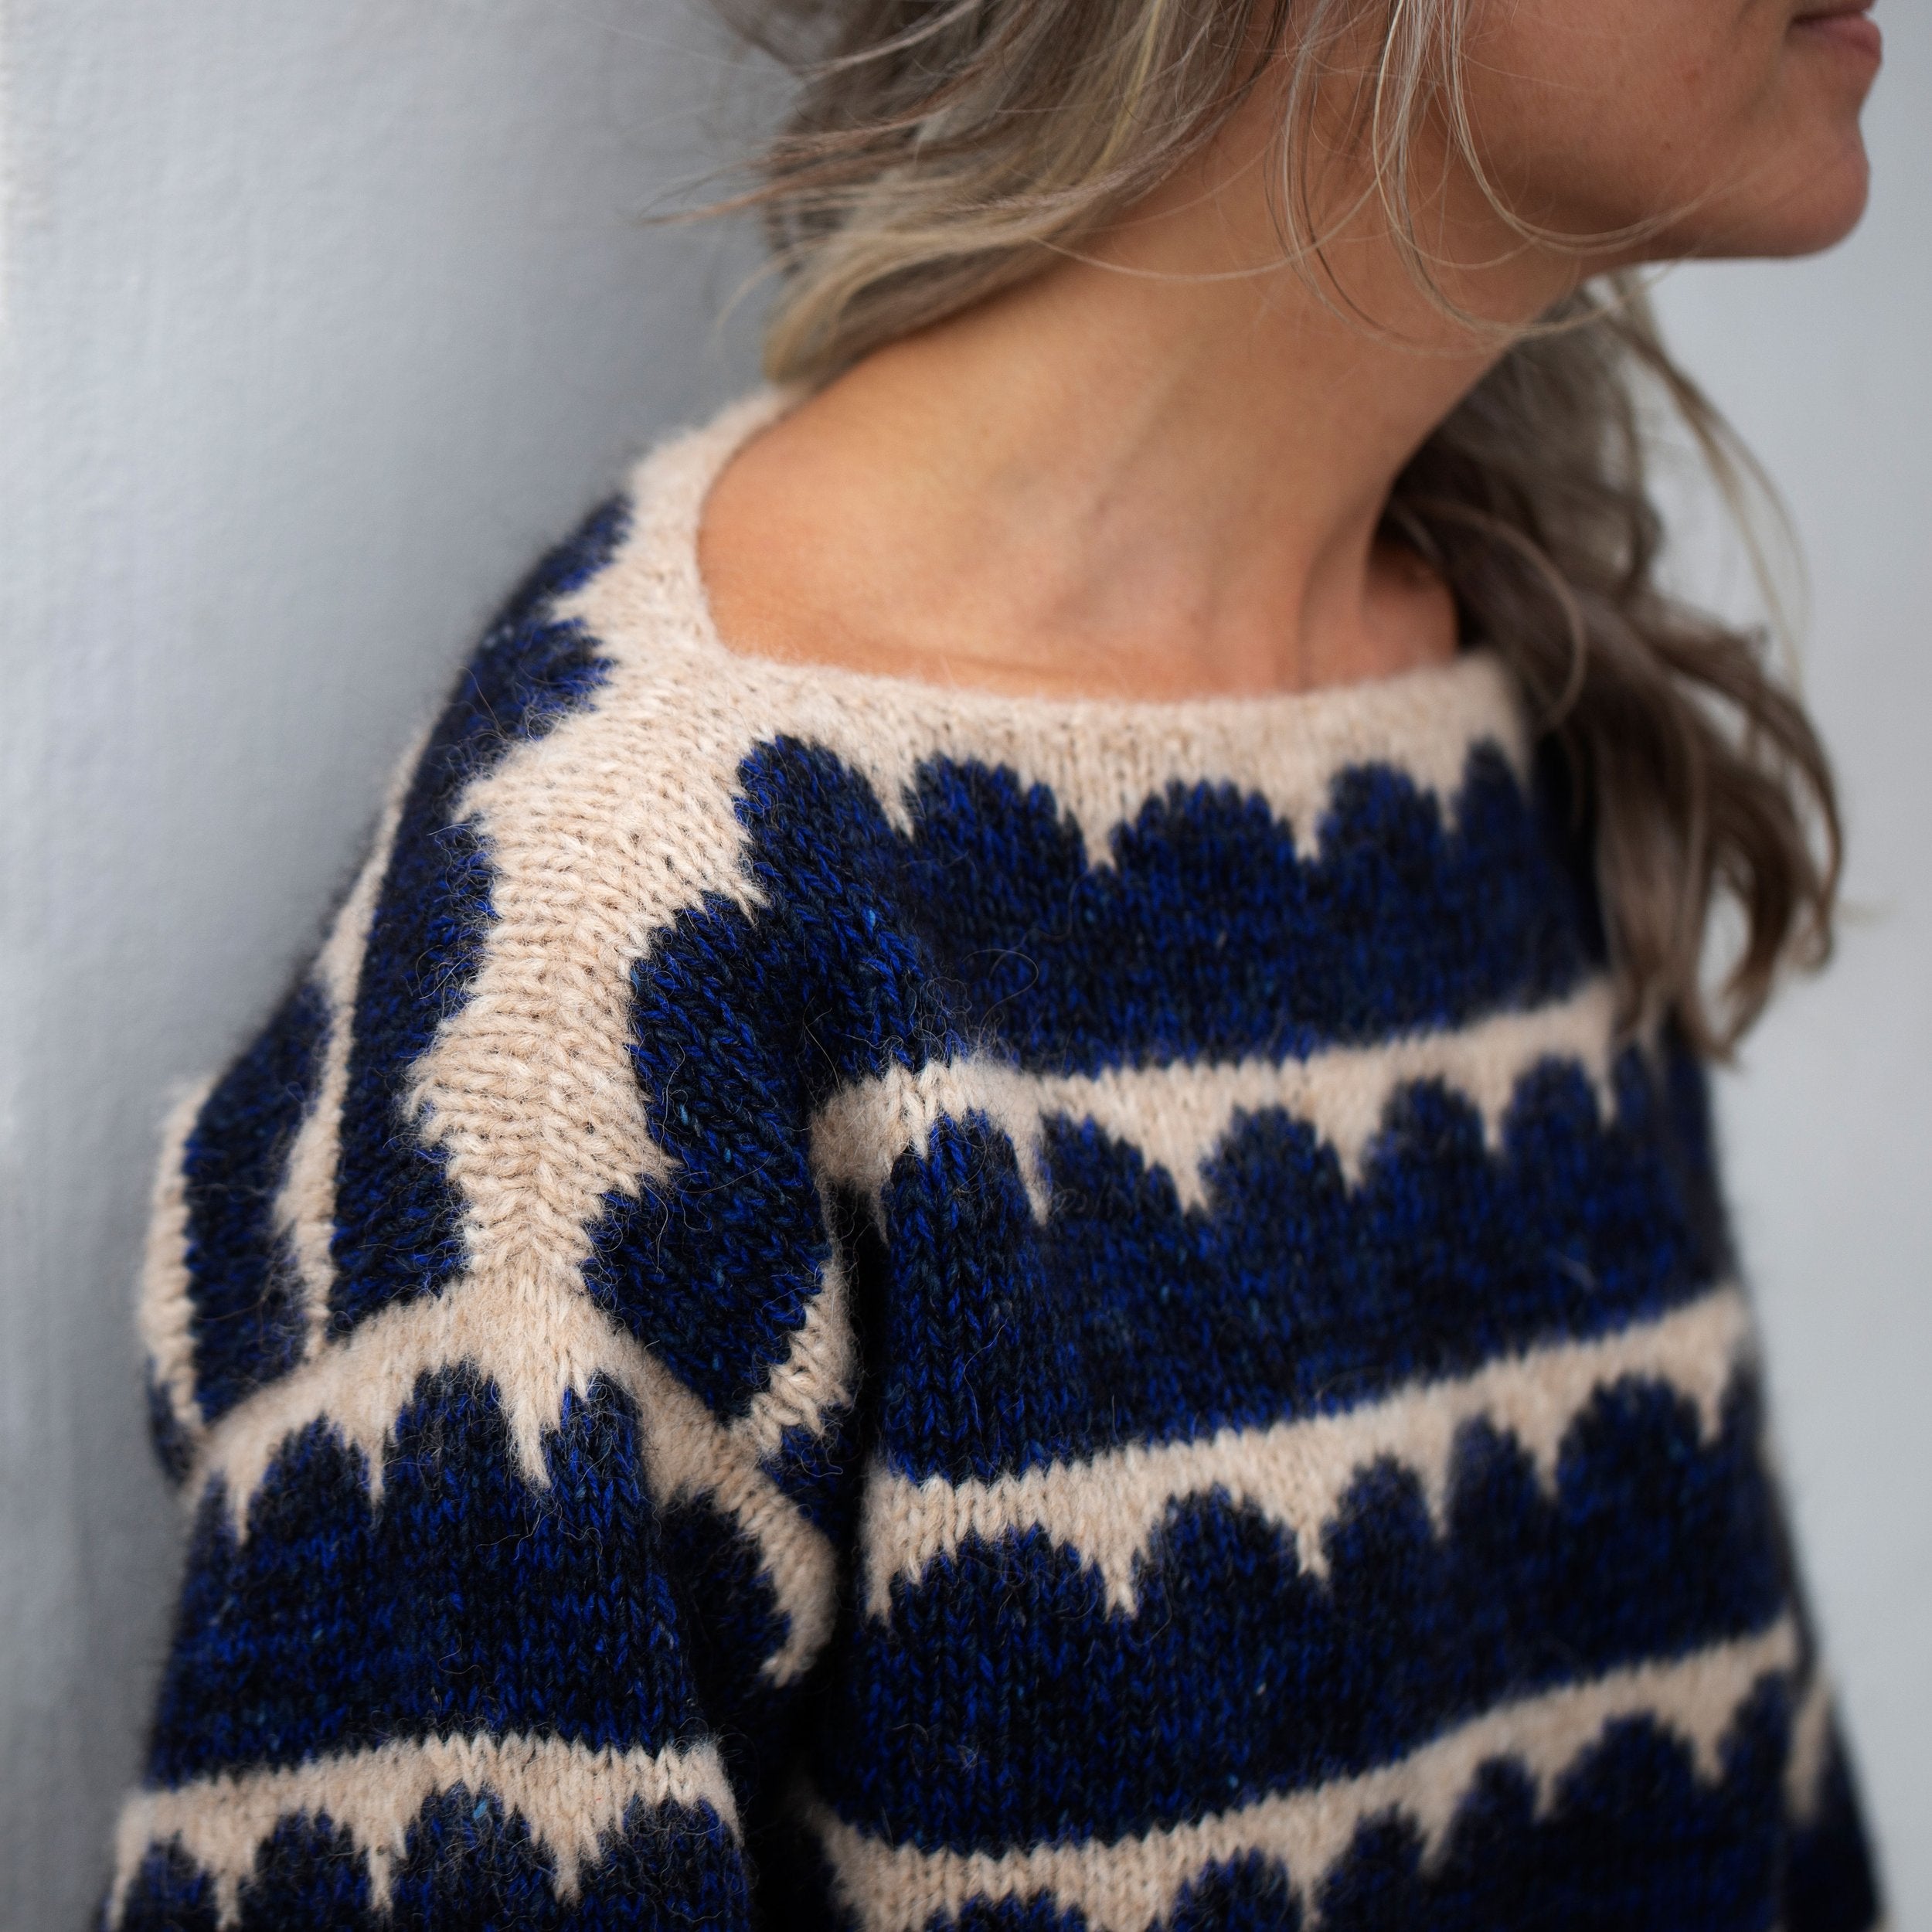 Robinia Sweater Anne Ventzel - Strikkekit 2-farvet